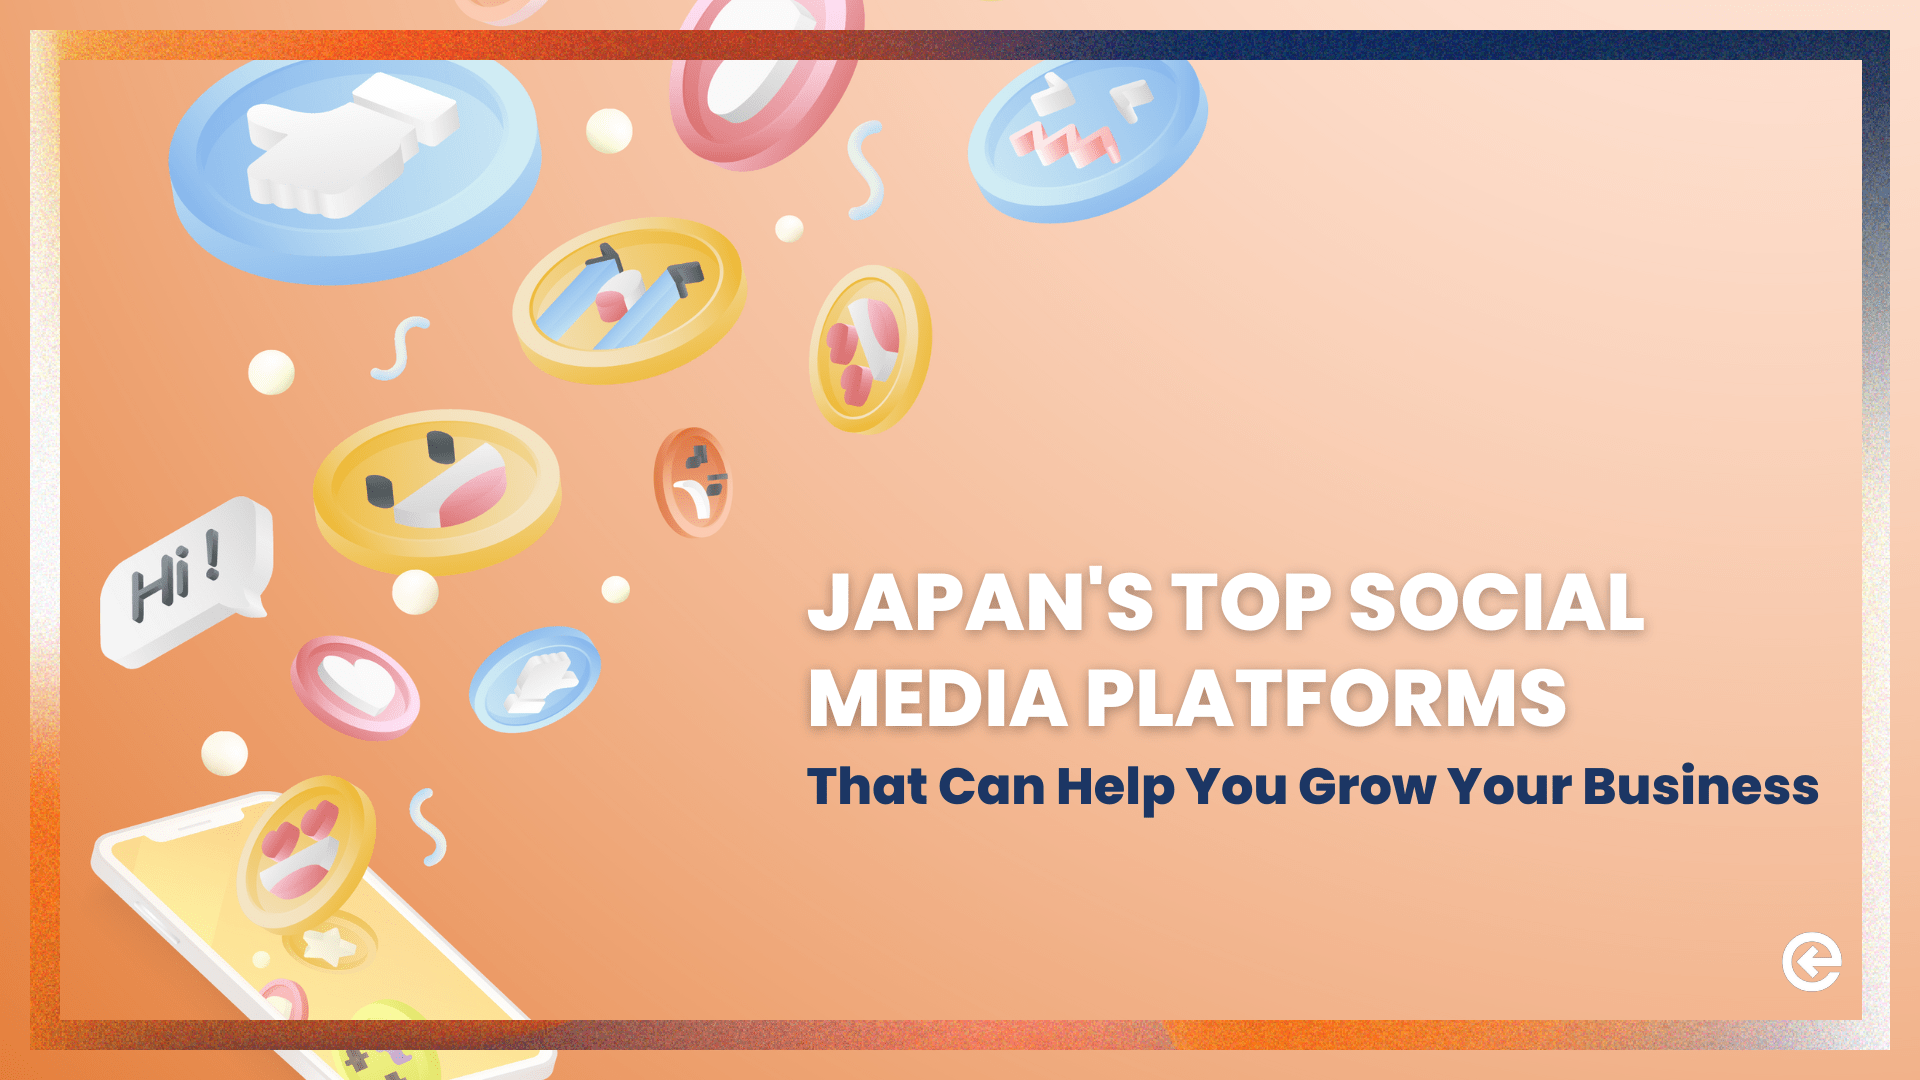 जापान के शीर्ष सोशल मीडिया प्लेटफॉर्म जो आपके ब्रांड को विकसित करने में आपकी मदद कर सकते हैं